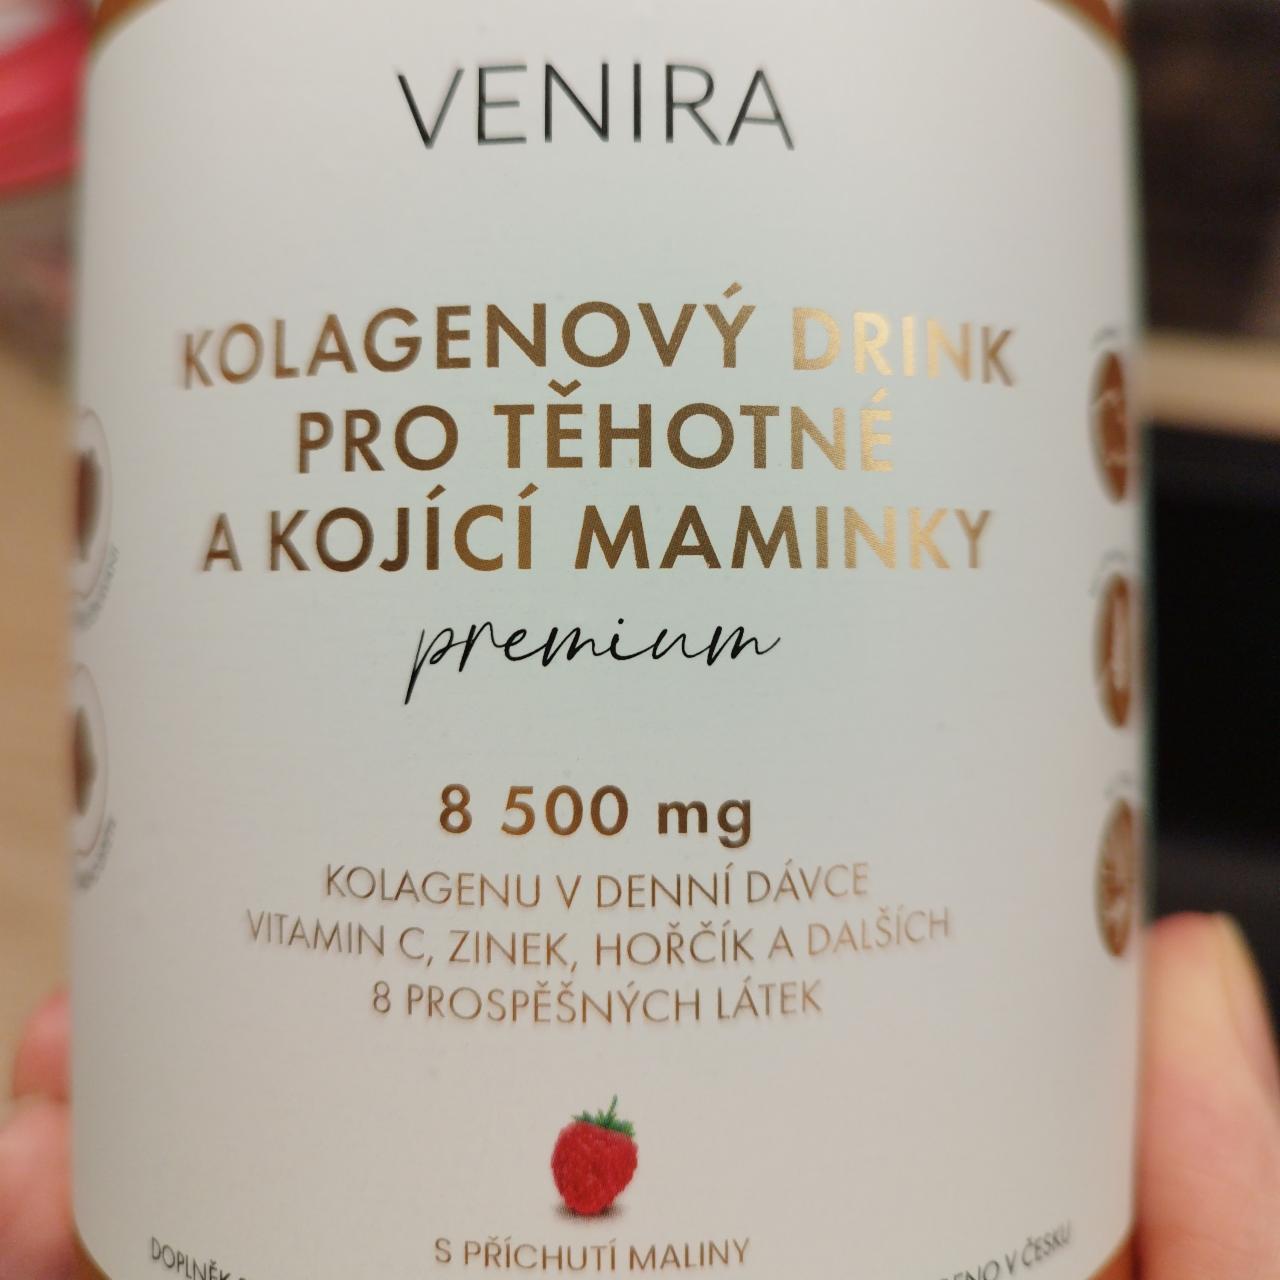 Fotografie - Kolagenový drink pro těhotné a kojící maminky premium Malina Venira